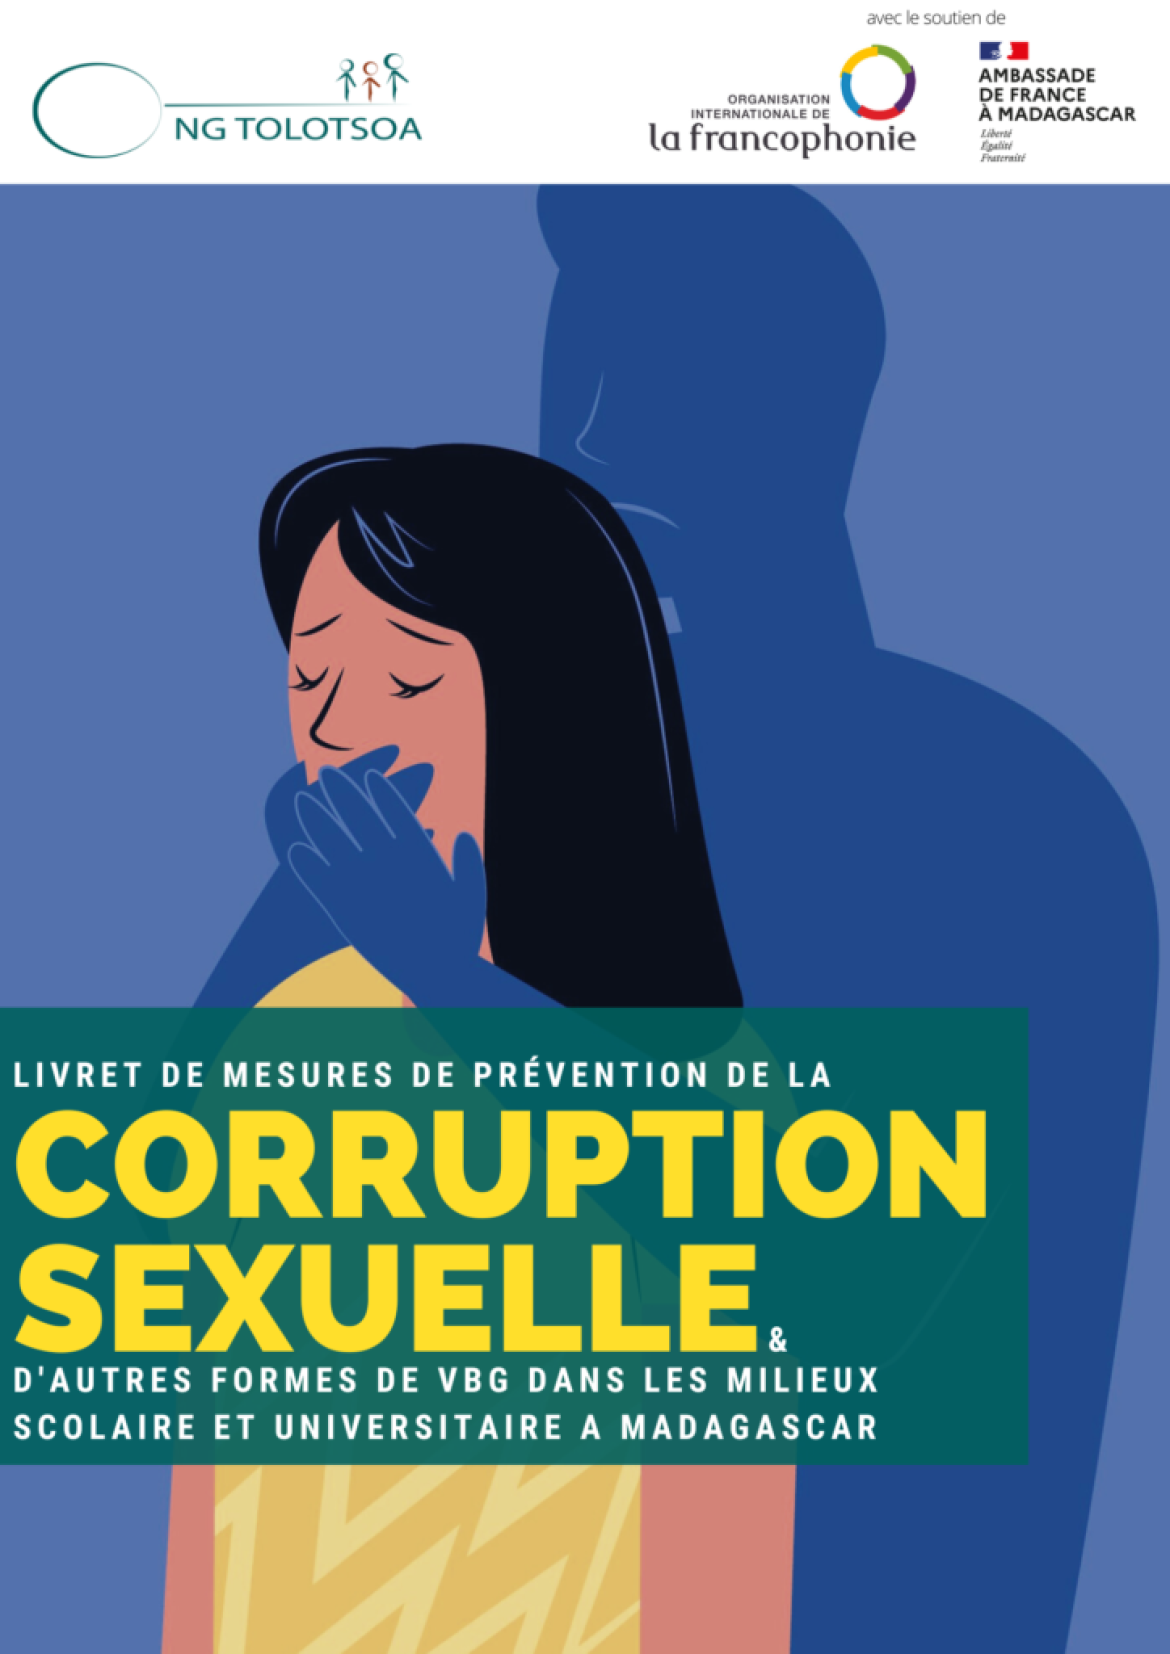 Le Livret de mesures de Prévention de la corruption sexuelle et d’autres formes de VBG dans les milieux scolaire et universitaire à Madagascar par l’ONG TOLOTSOA